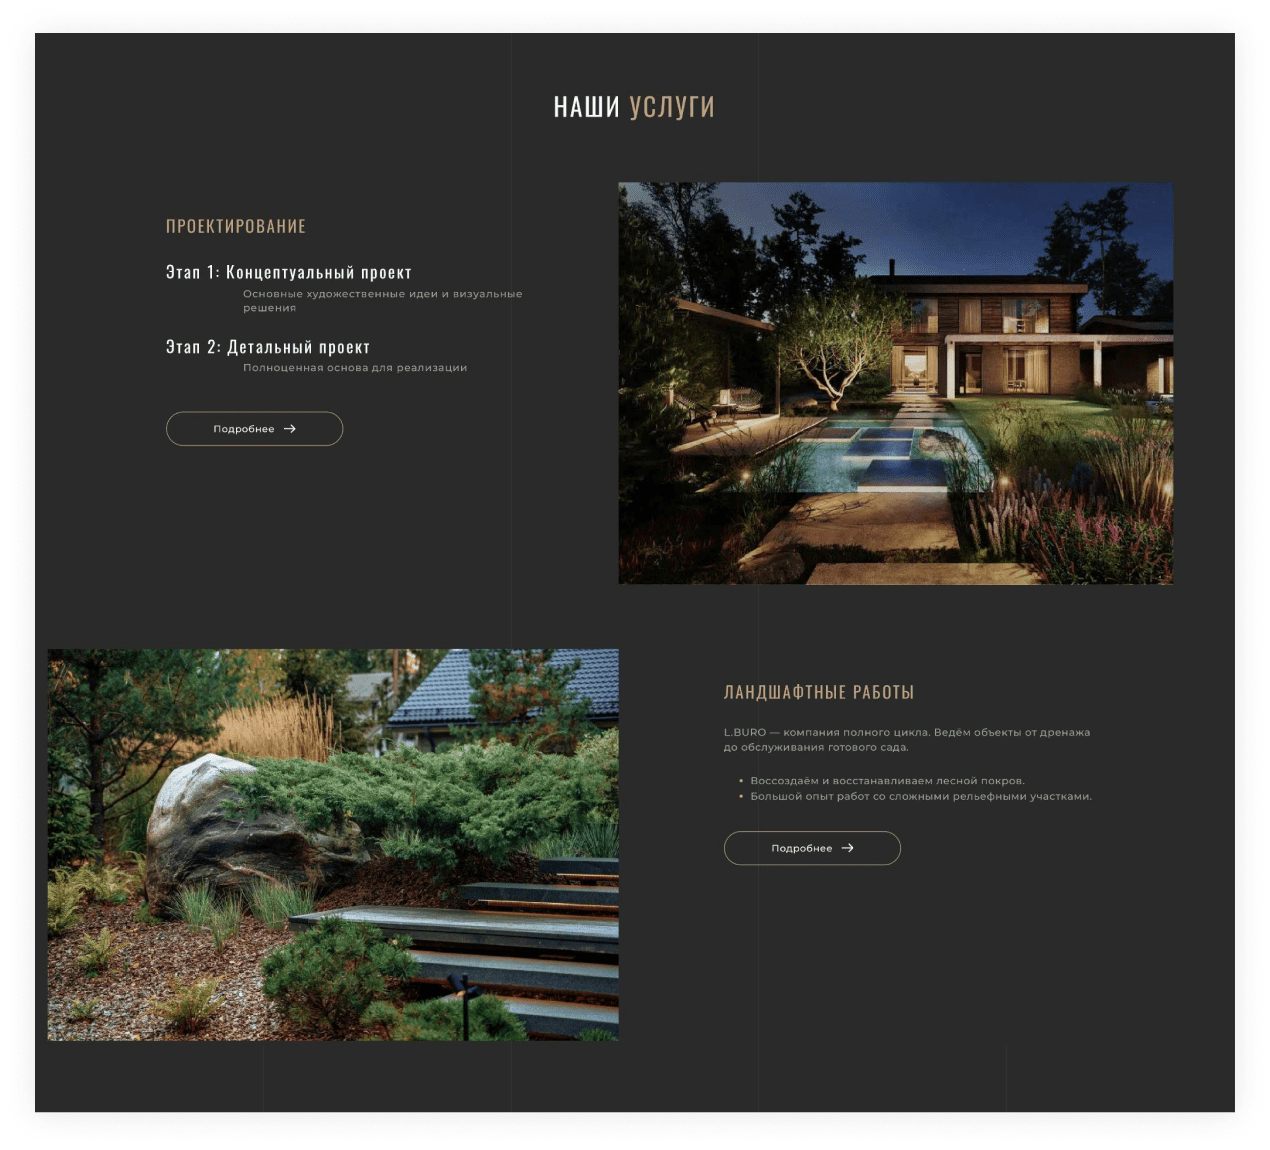 Land Park Design - студия ландшафтного дизайна. | Шаблоны для веб-дизайна, Дизайн, Дизайн сайта